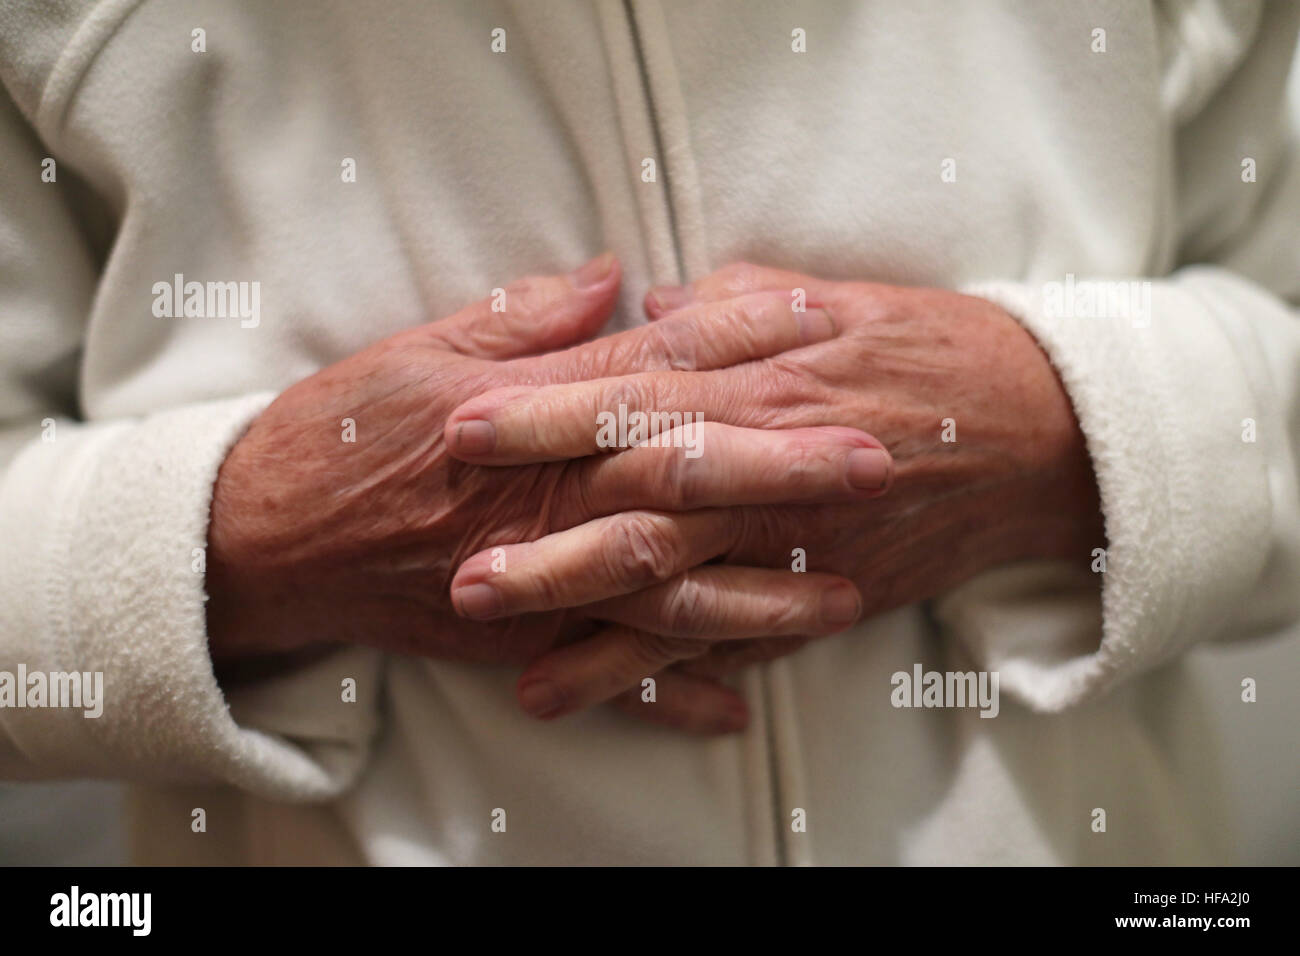 Eine ältere Frau Hände in Poole, Dorset. PRESSEVERBAND Foto. Bild Datum: Donnerstag, 22. Dezember 2016. Bildnachweis sollte lauten: Yui Mok/PA Wire Stockfoto